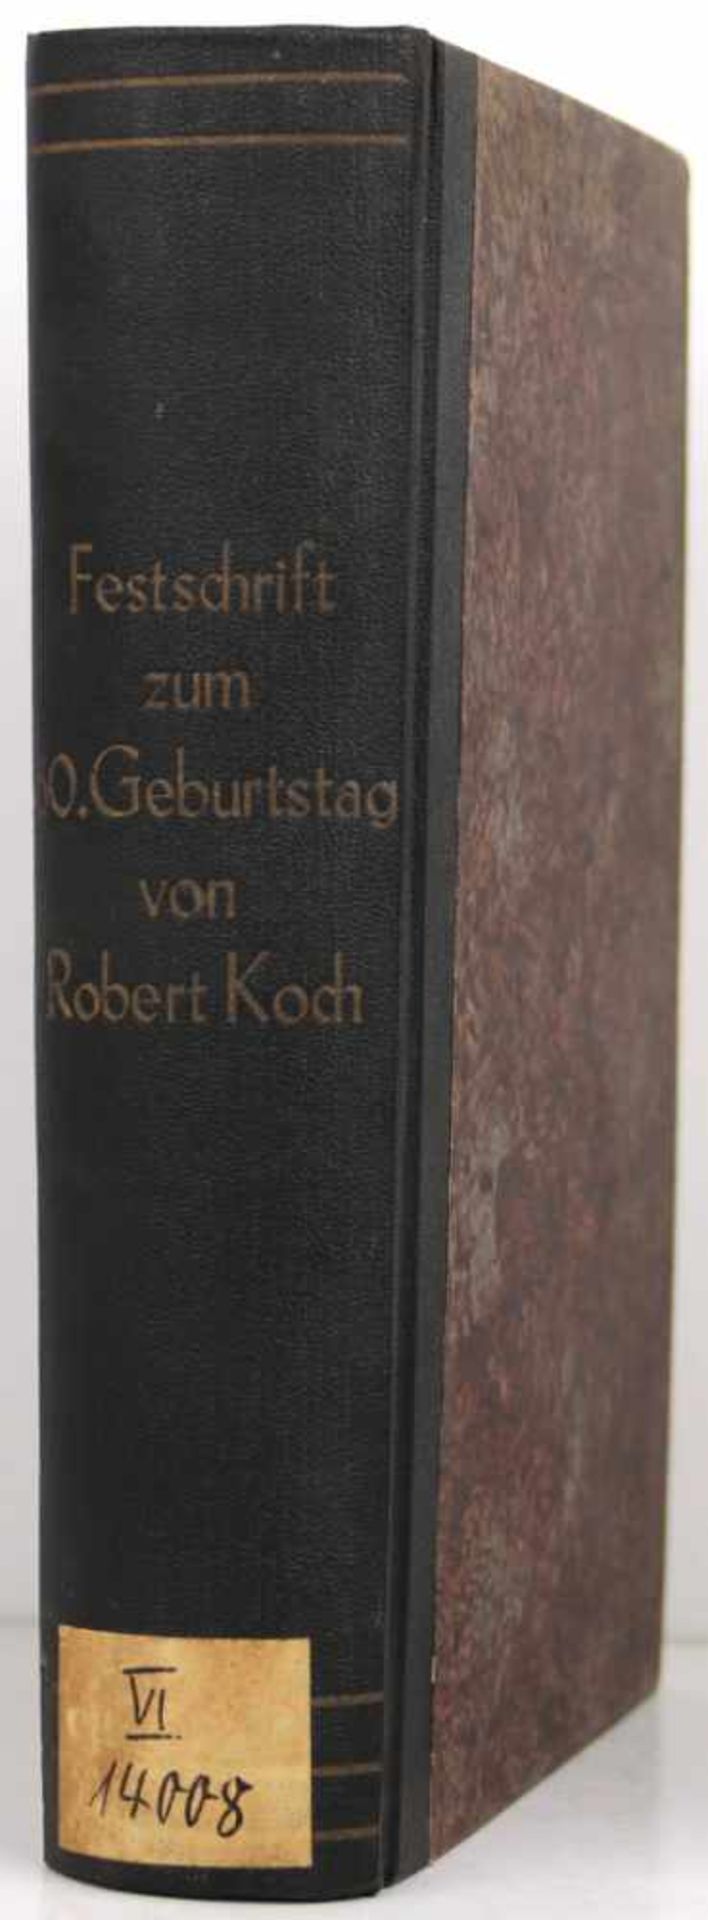 Koch, Robert. -Festschrift zum sechzigsten Geburtstage von Robert Koch. Herausgegeben von seinen